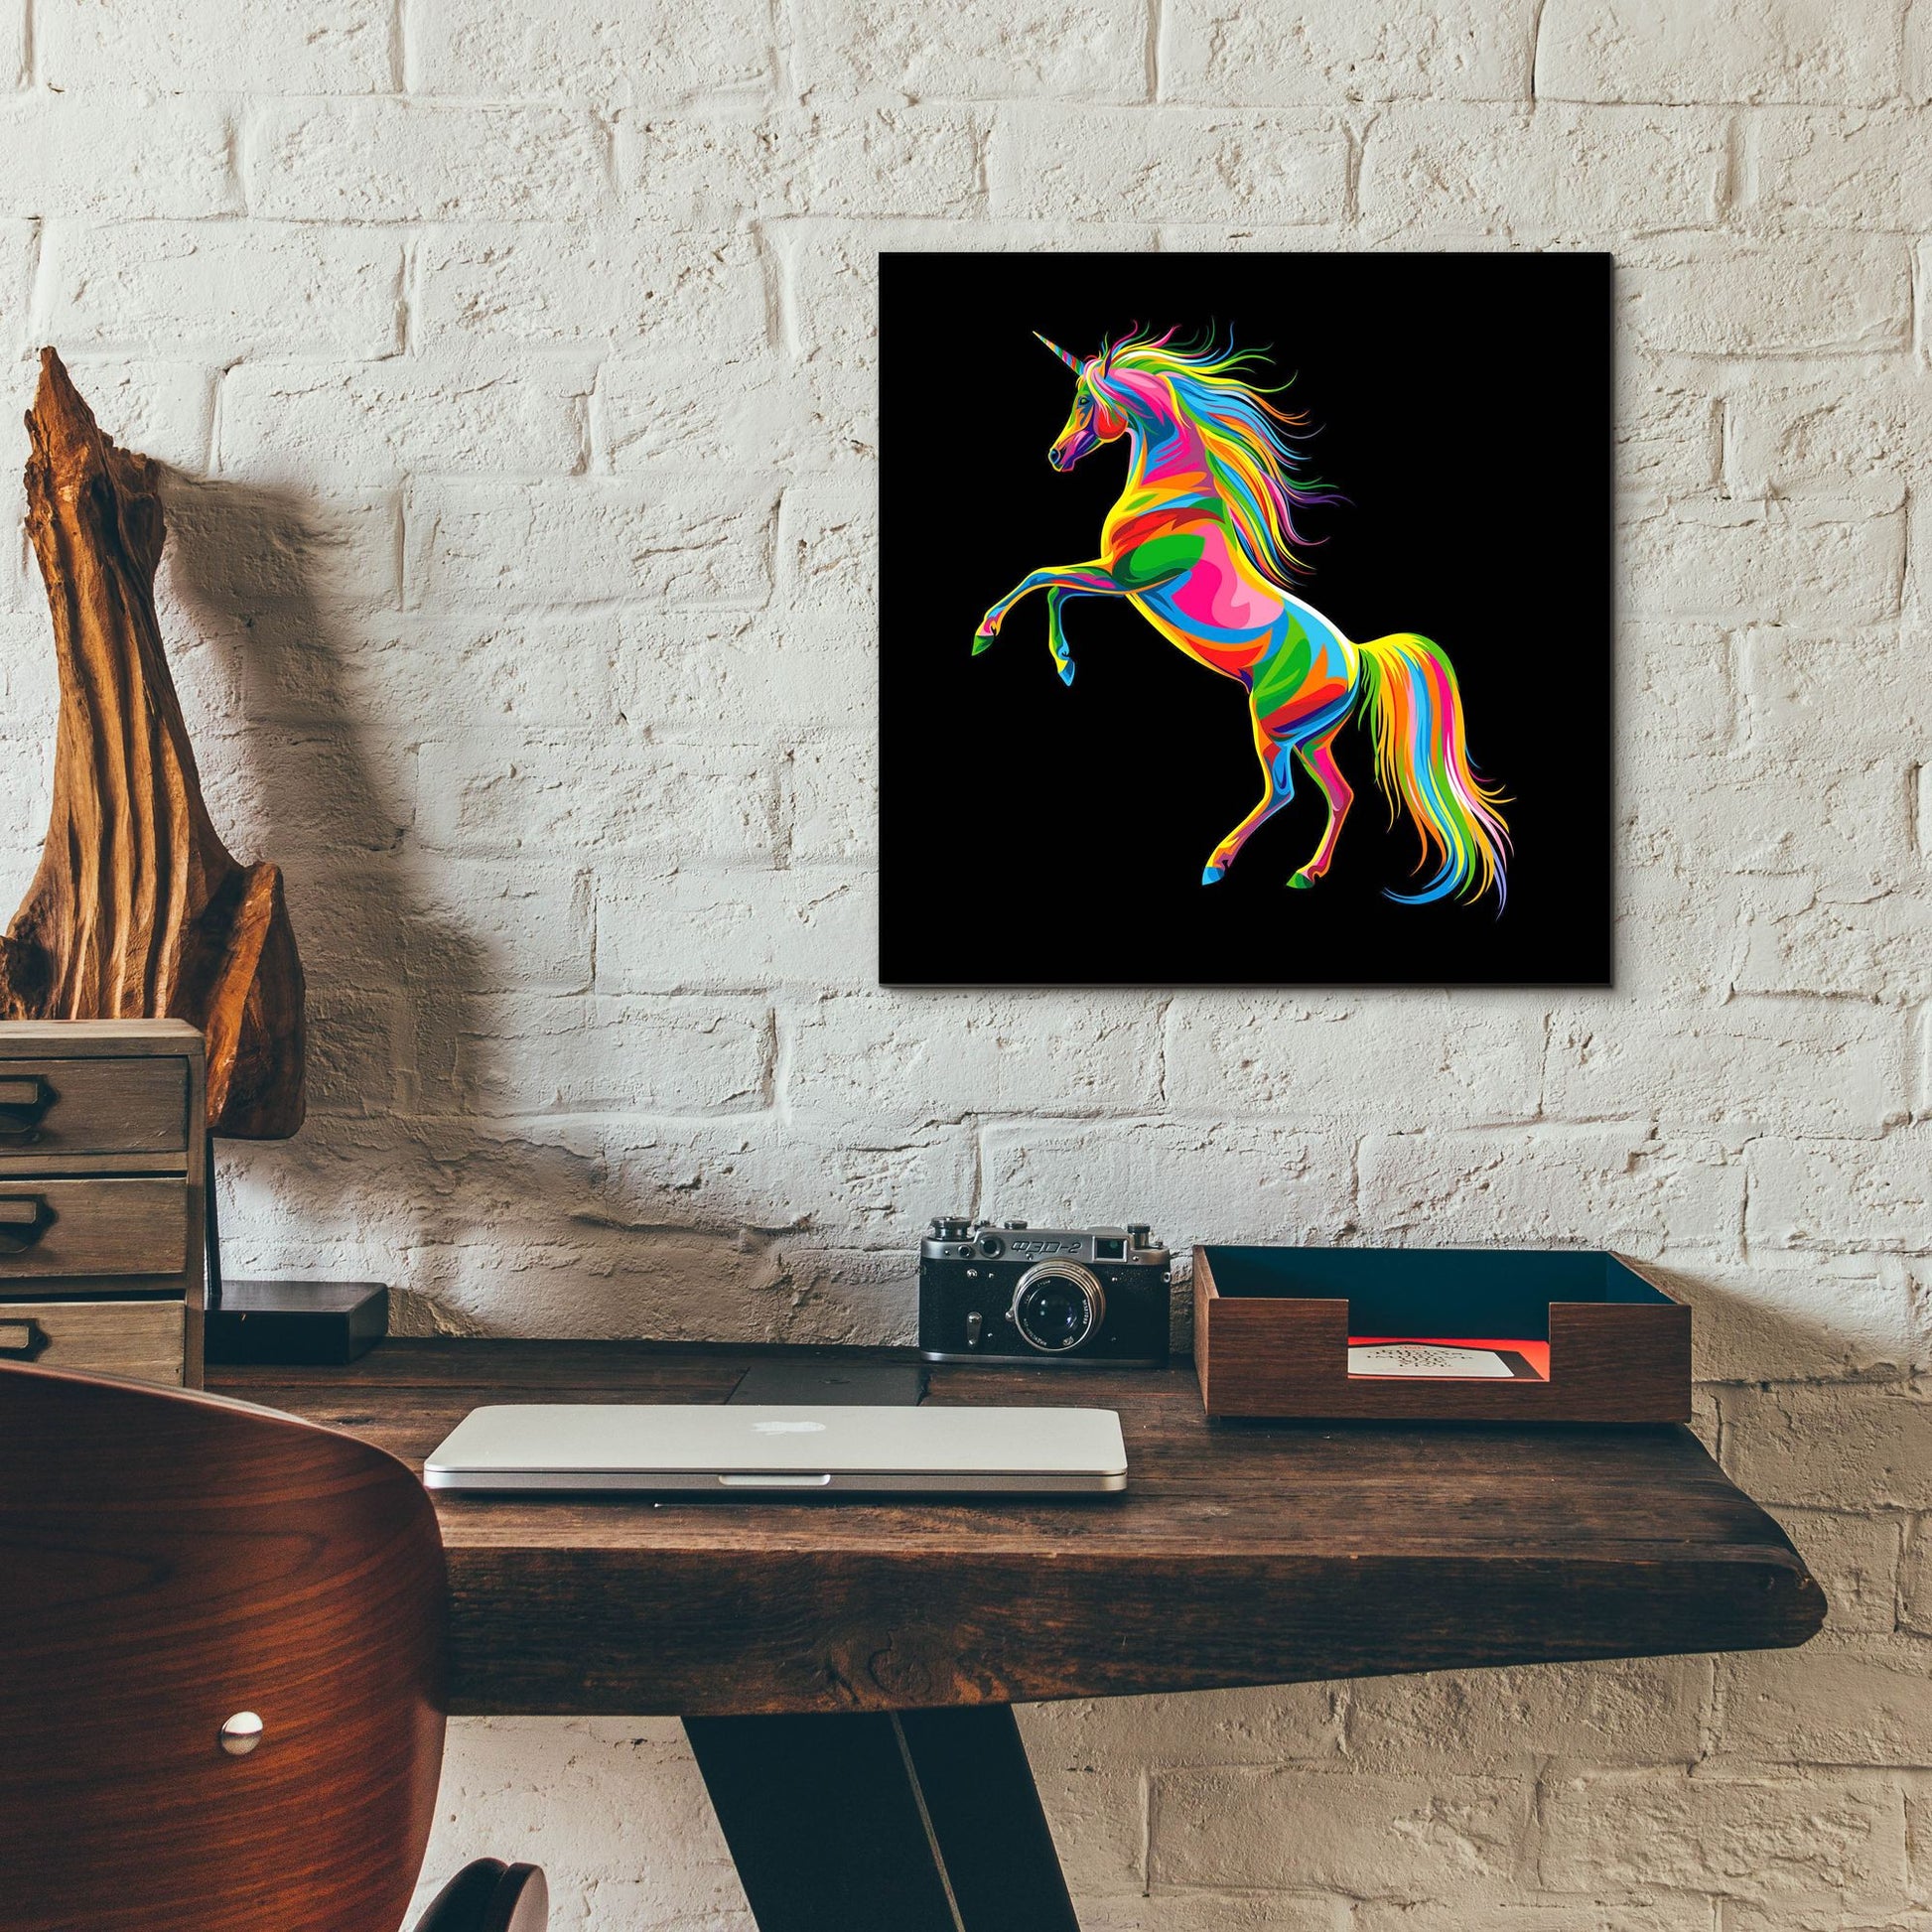 Epic Art 'Unicorn' by Bob Weer, Acrylic Glass Wall Art,12x12